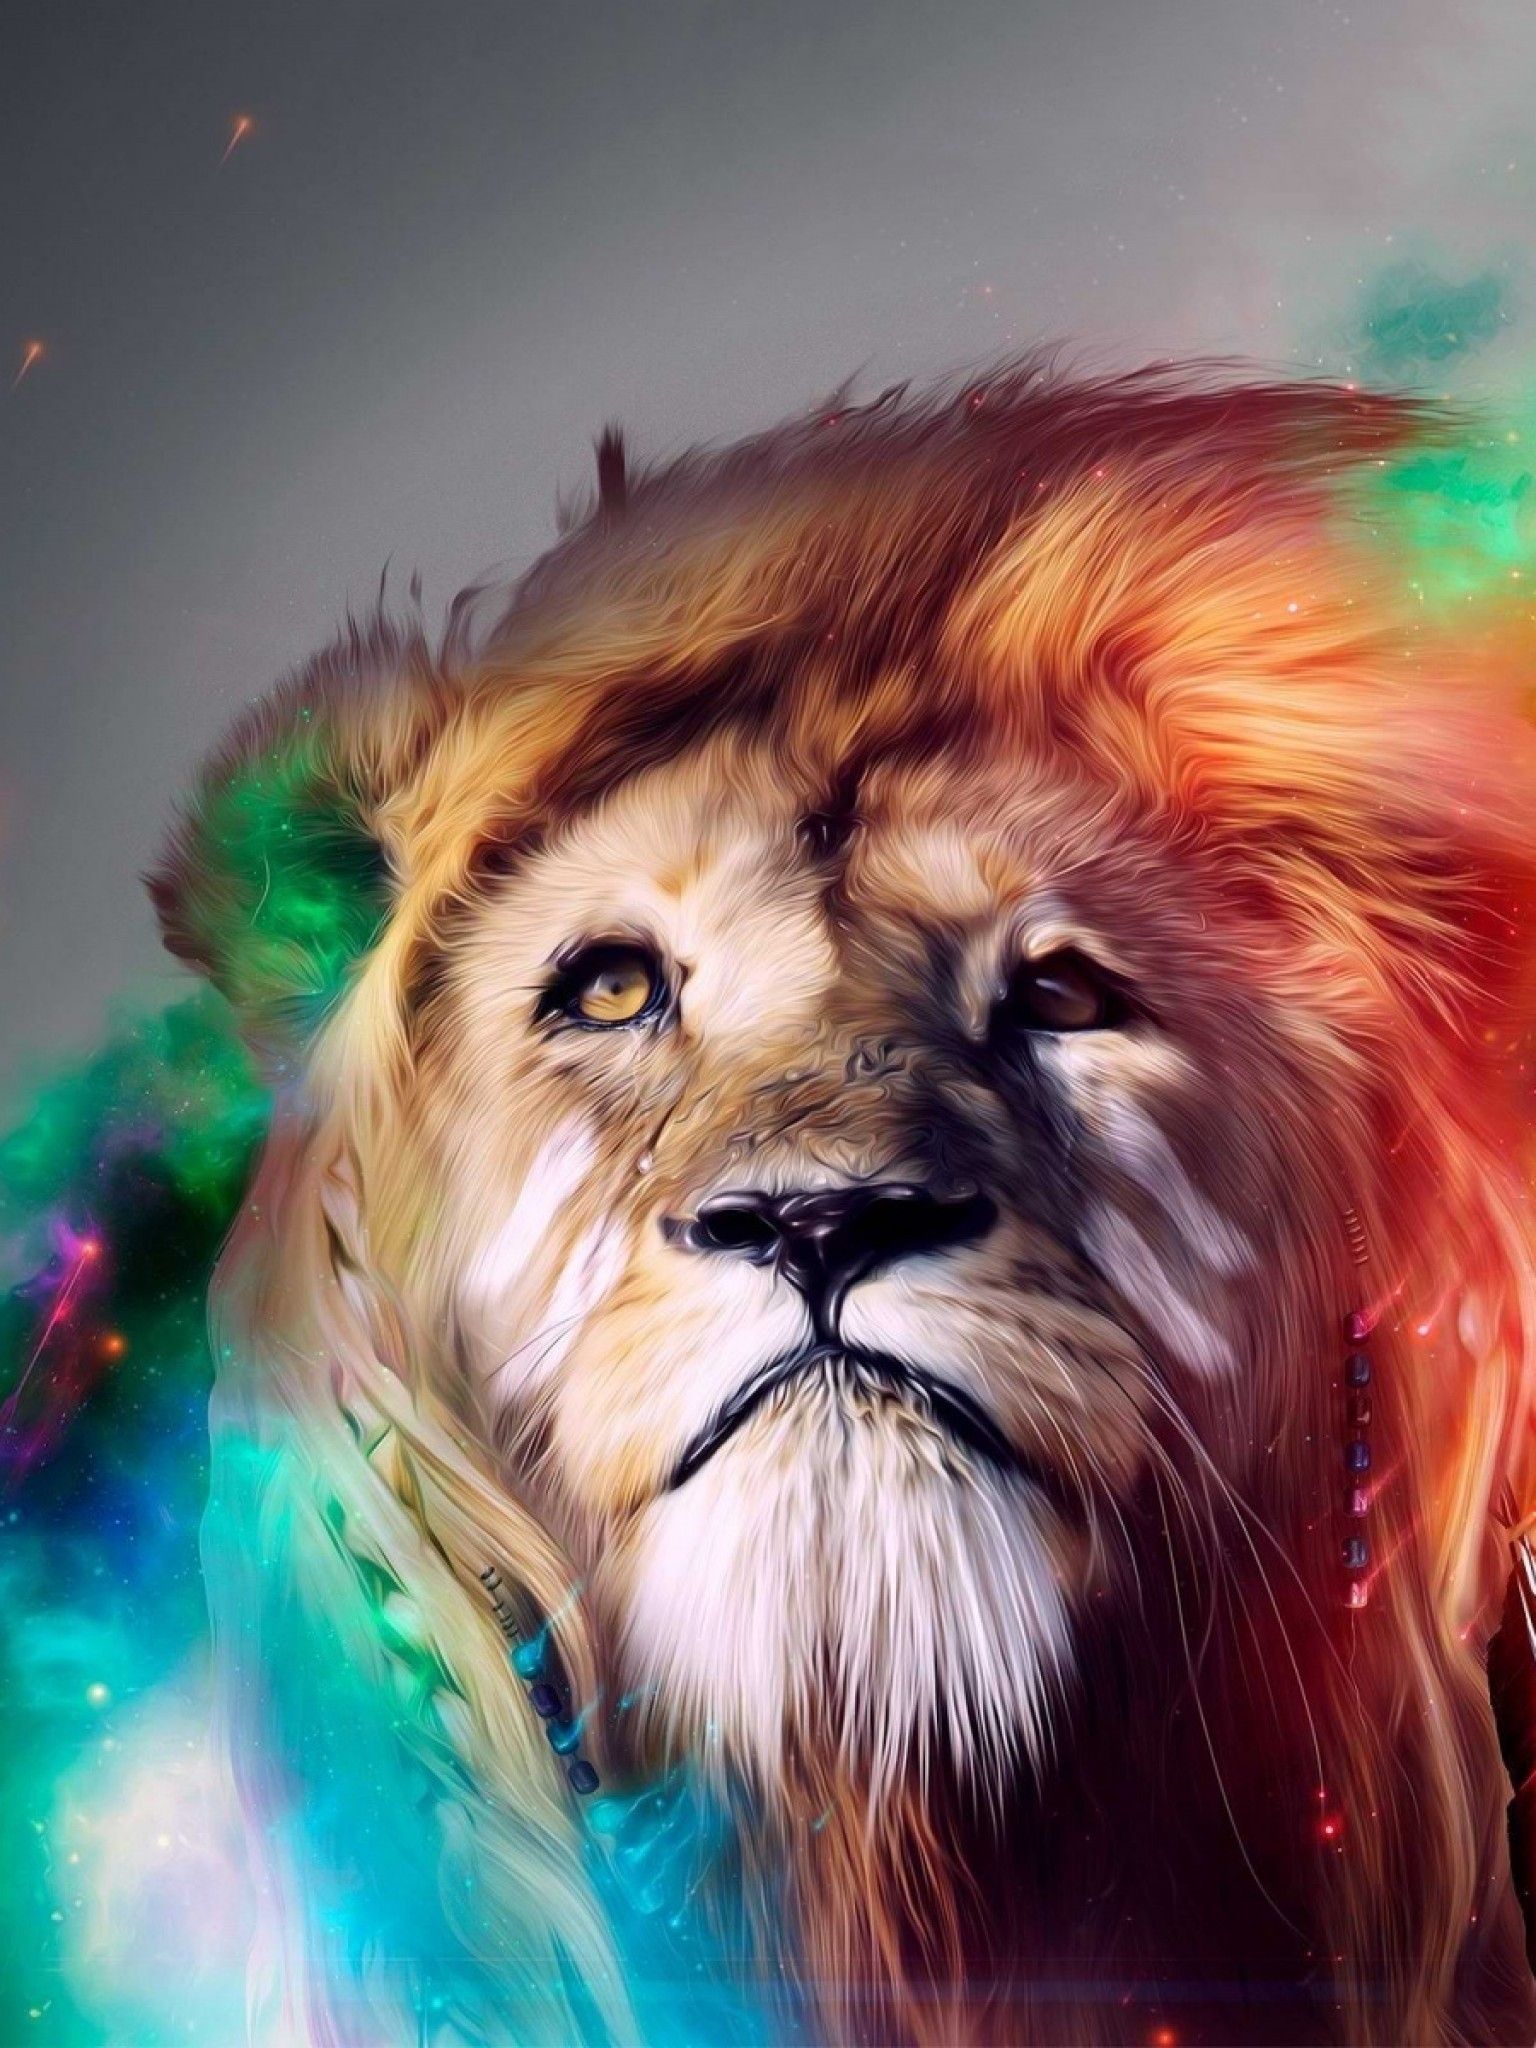 Lion Smoking Digital Art Wallpapers